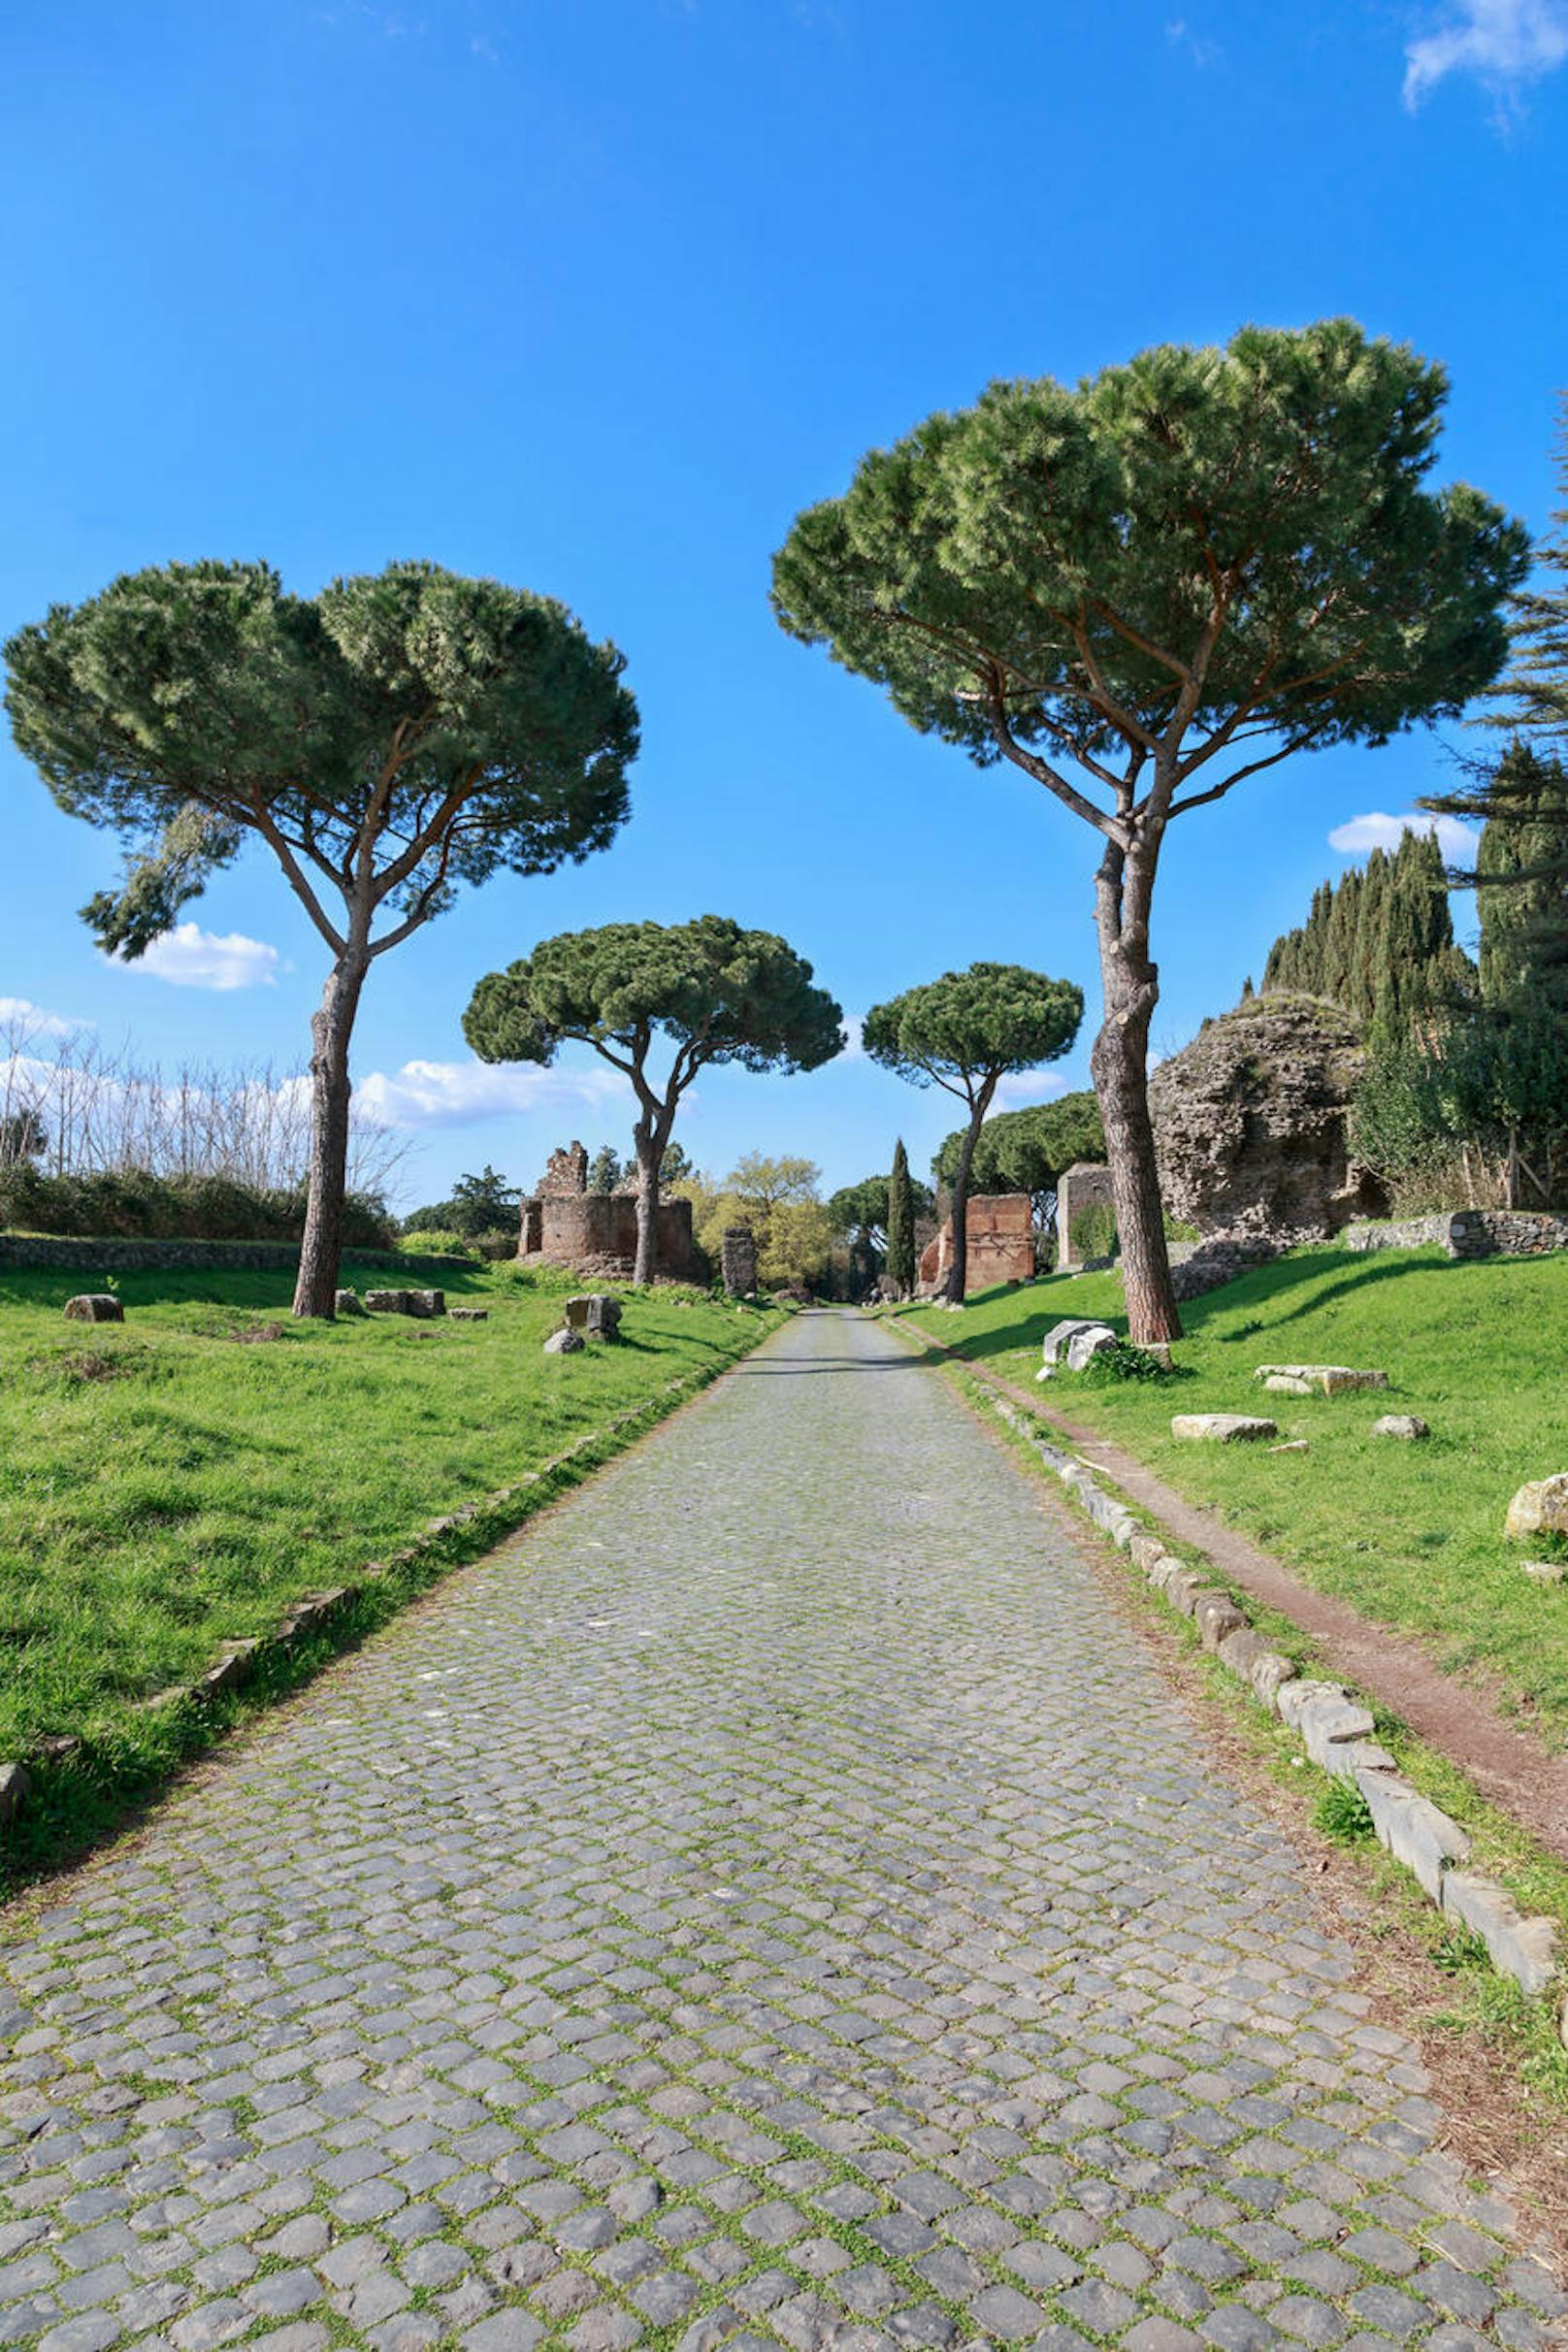 Via Appia - die Straße ist zwar unter allen Touristen bekannt, allerdings verirren sich nur sehr wenige dorthin. Insgesamt ist sie 560 km lang, der schönste Abschnitt ist allerdings die Via Appia Antica. Hier fahren kaum Autos, da sie nur schwer befahrbar ist, am Sonntag ist sie für Autos sogar komplett gesperrt. Entlang der Straße kommt man an Katakomben, Aquädukten und alten Gräbern vorbei!